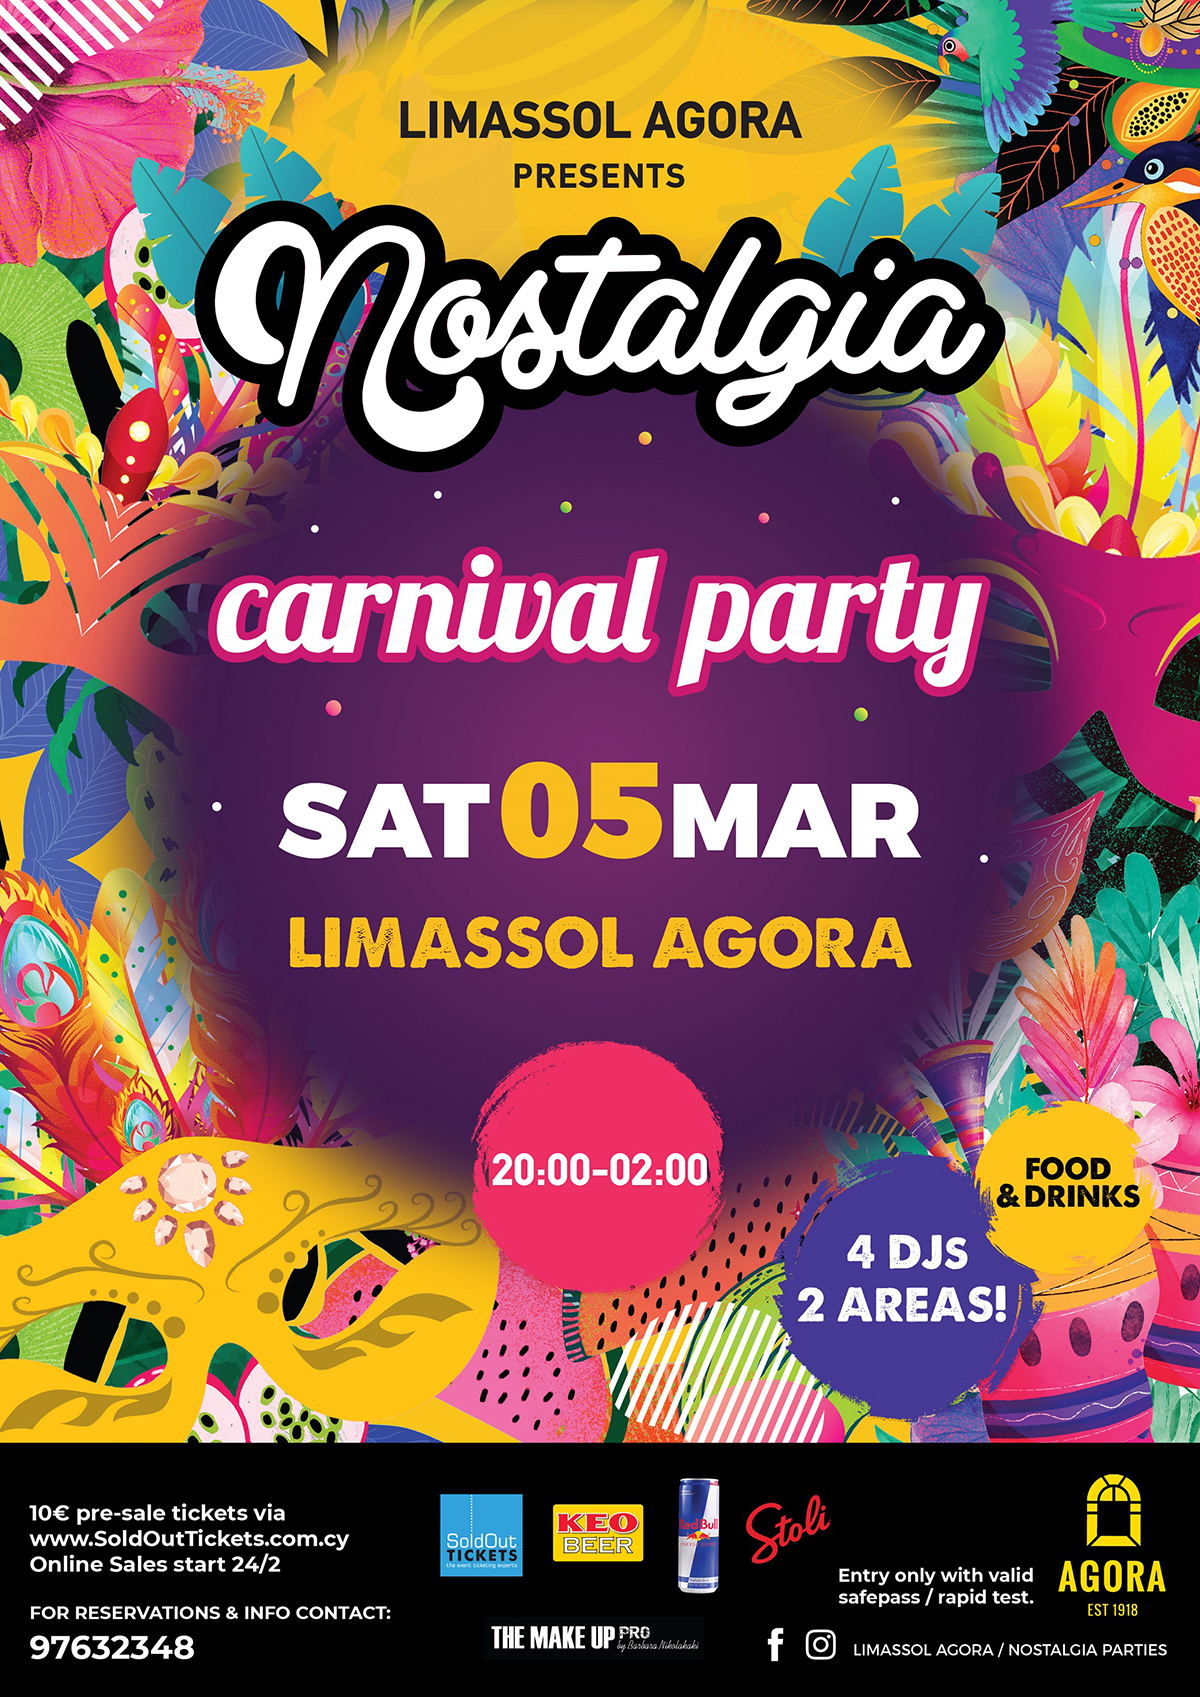 NOSTALGIA LIMASSOL CARNIVAL PARTY